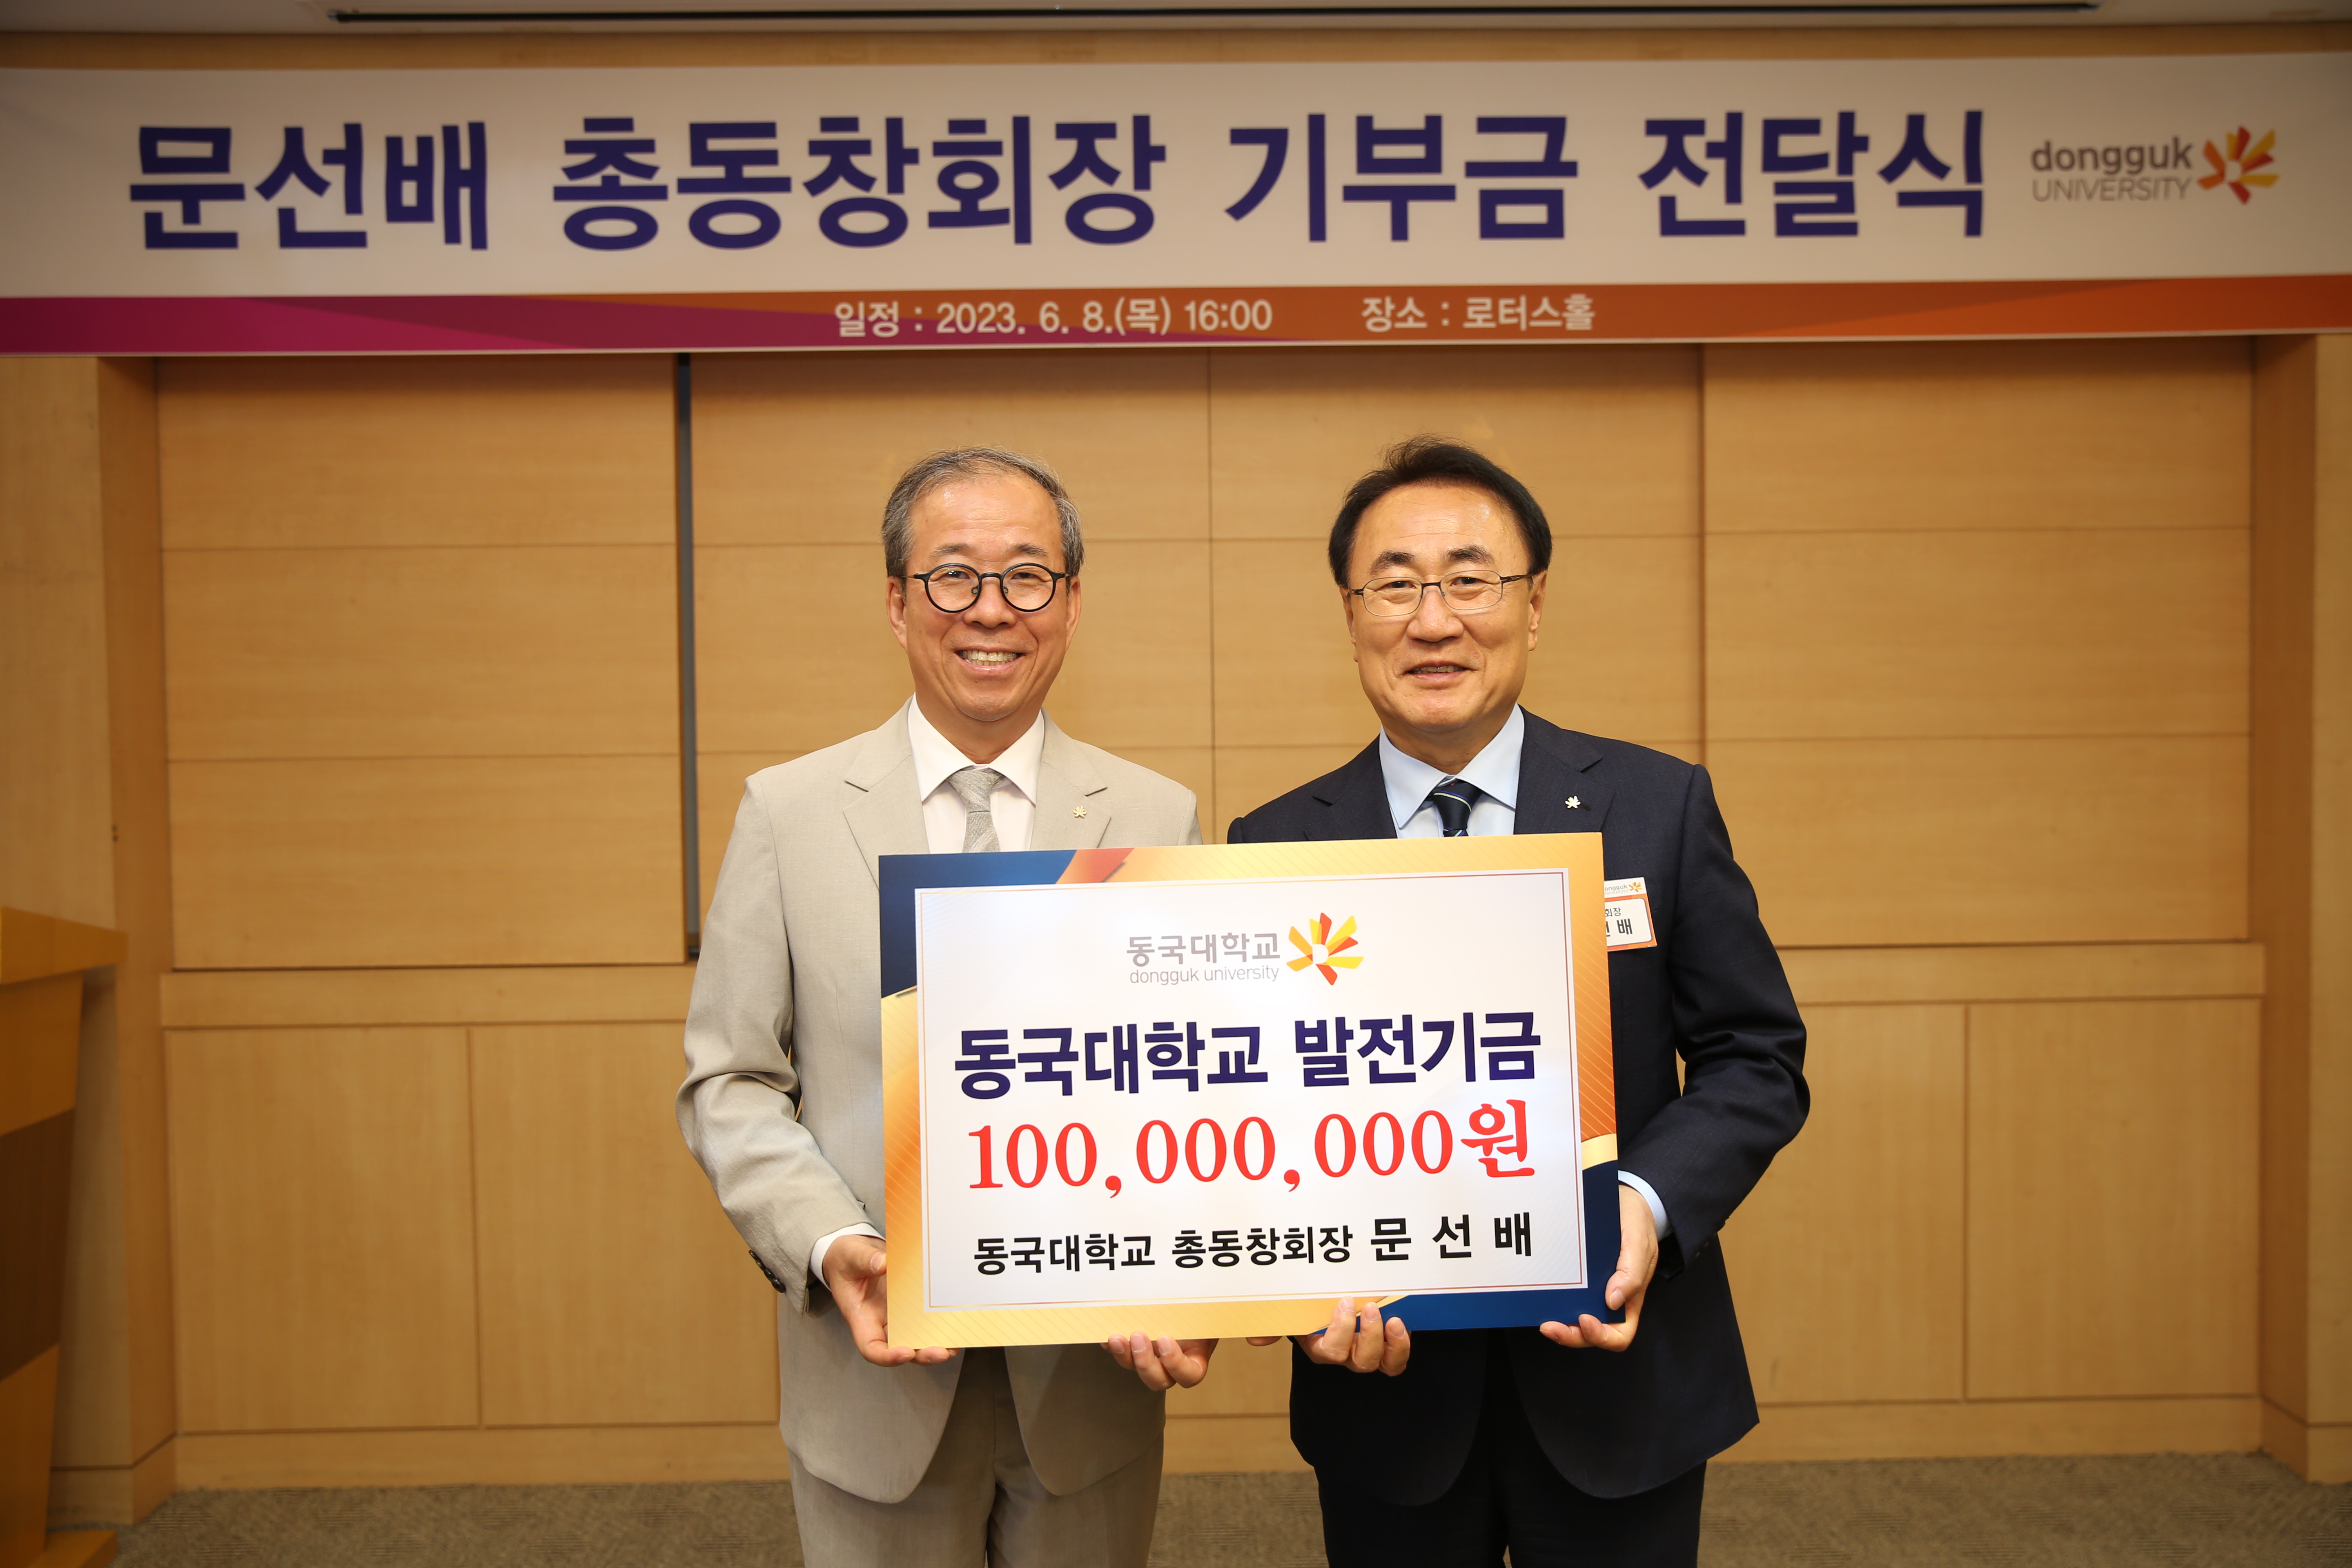 문선배 동국대 총동창회장, 동국대에 1억 원 기부 이미지 사진